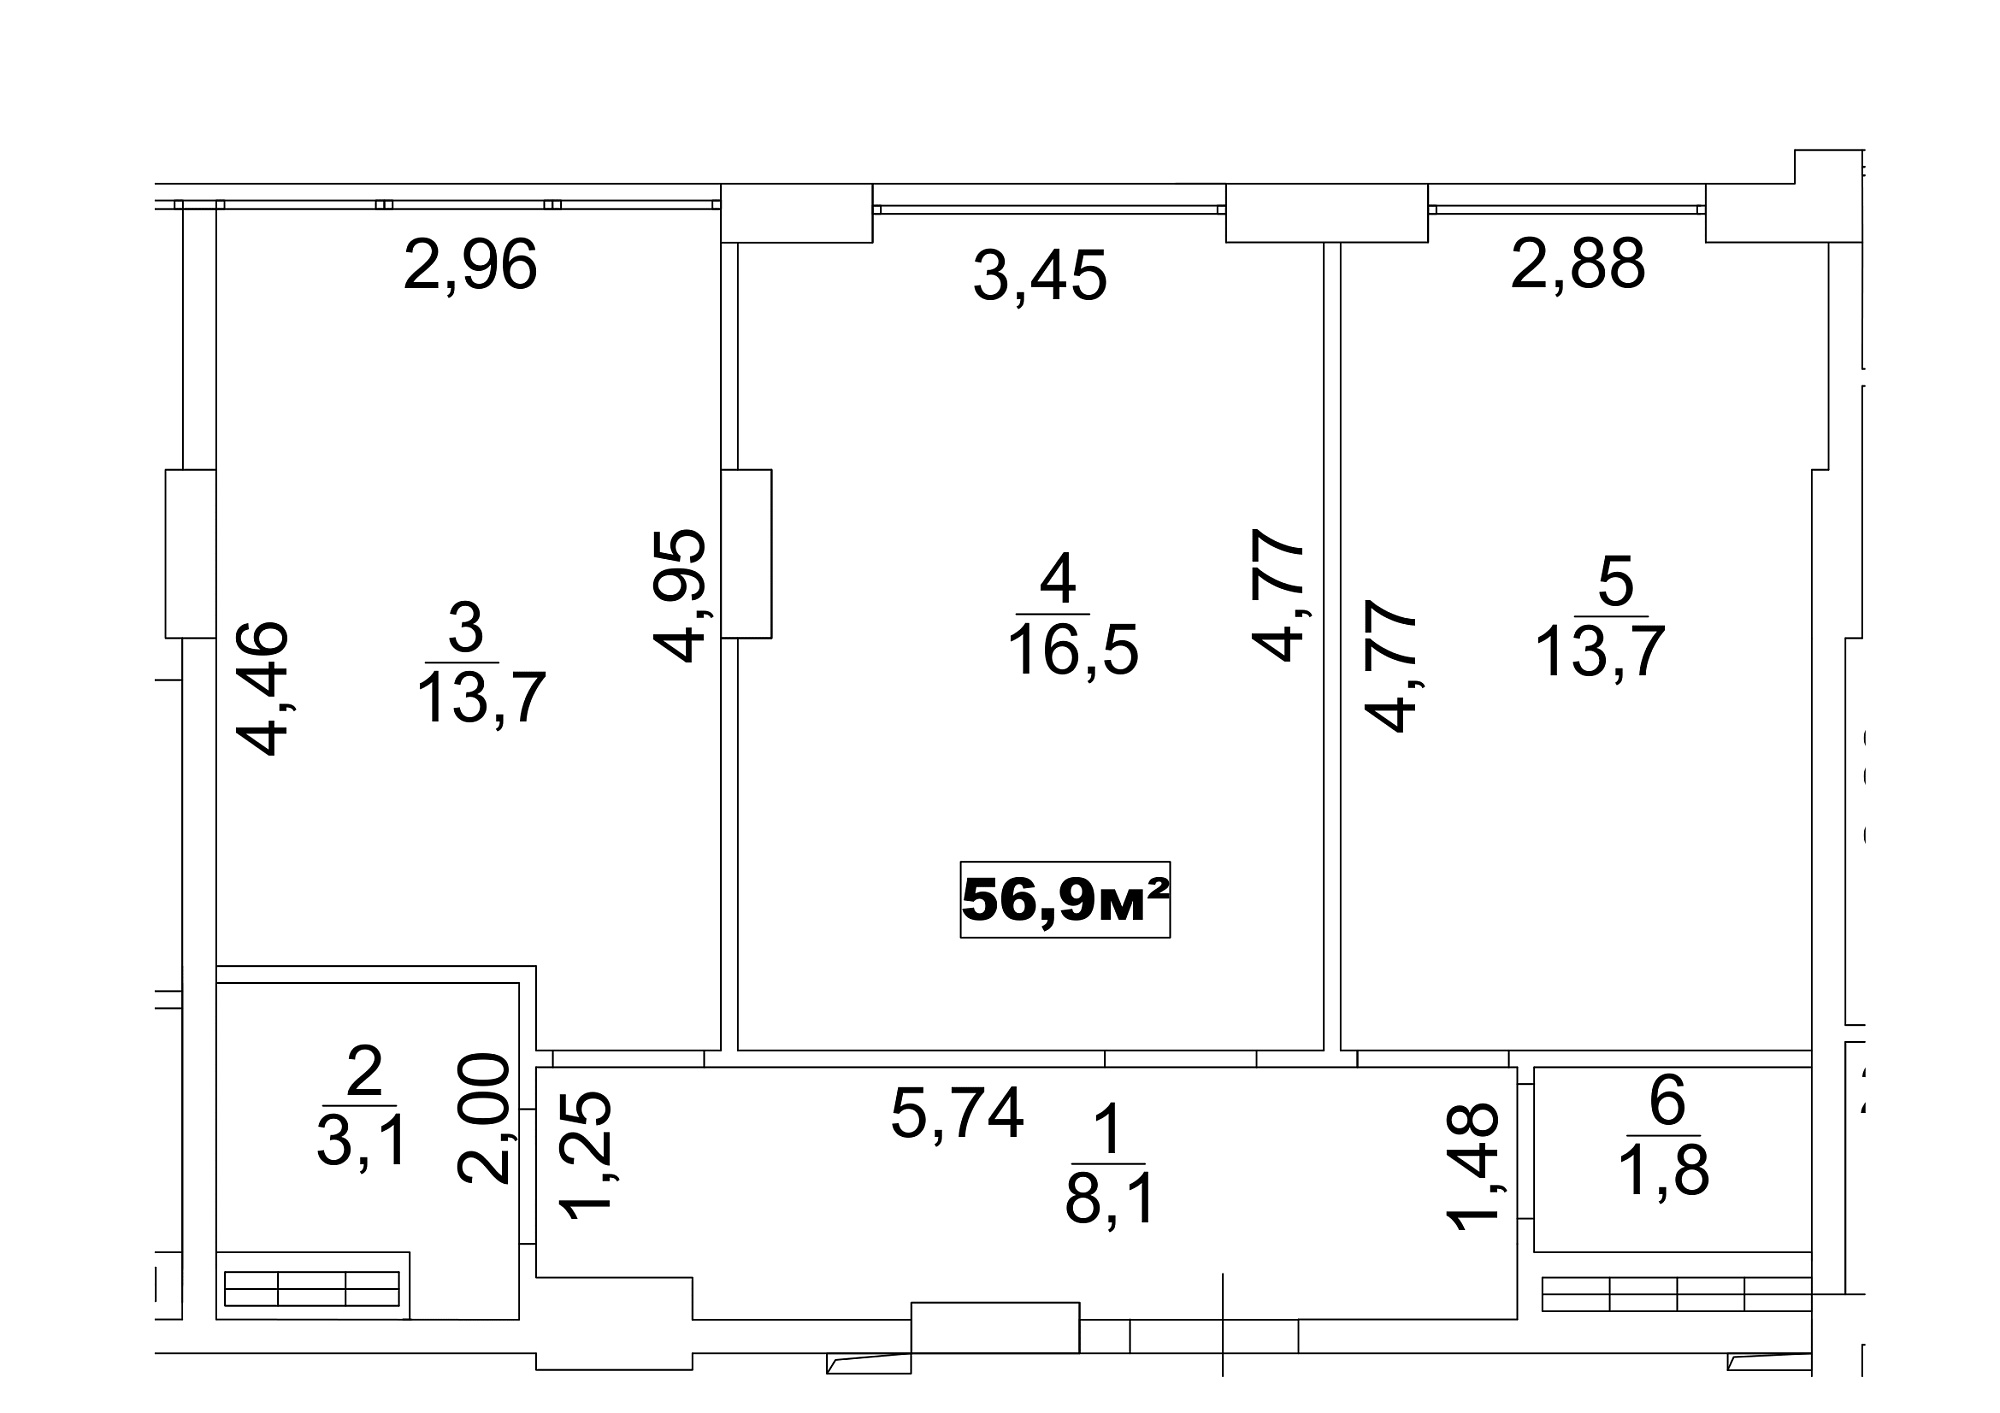 Планировка 2-к квартира площей 56.9м2, AB-13-04/00028.